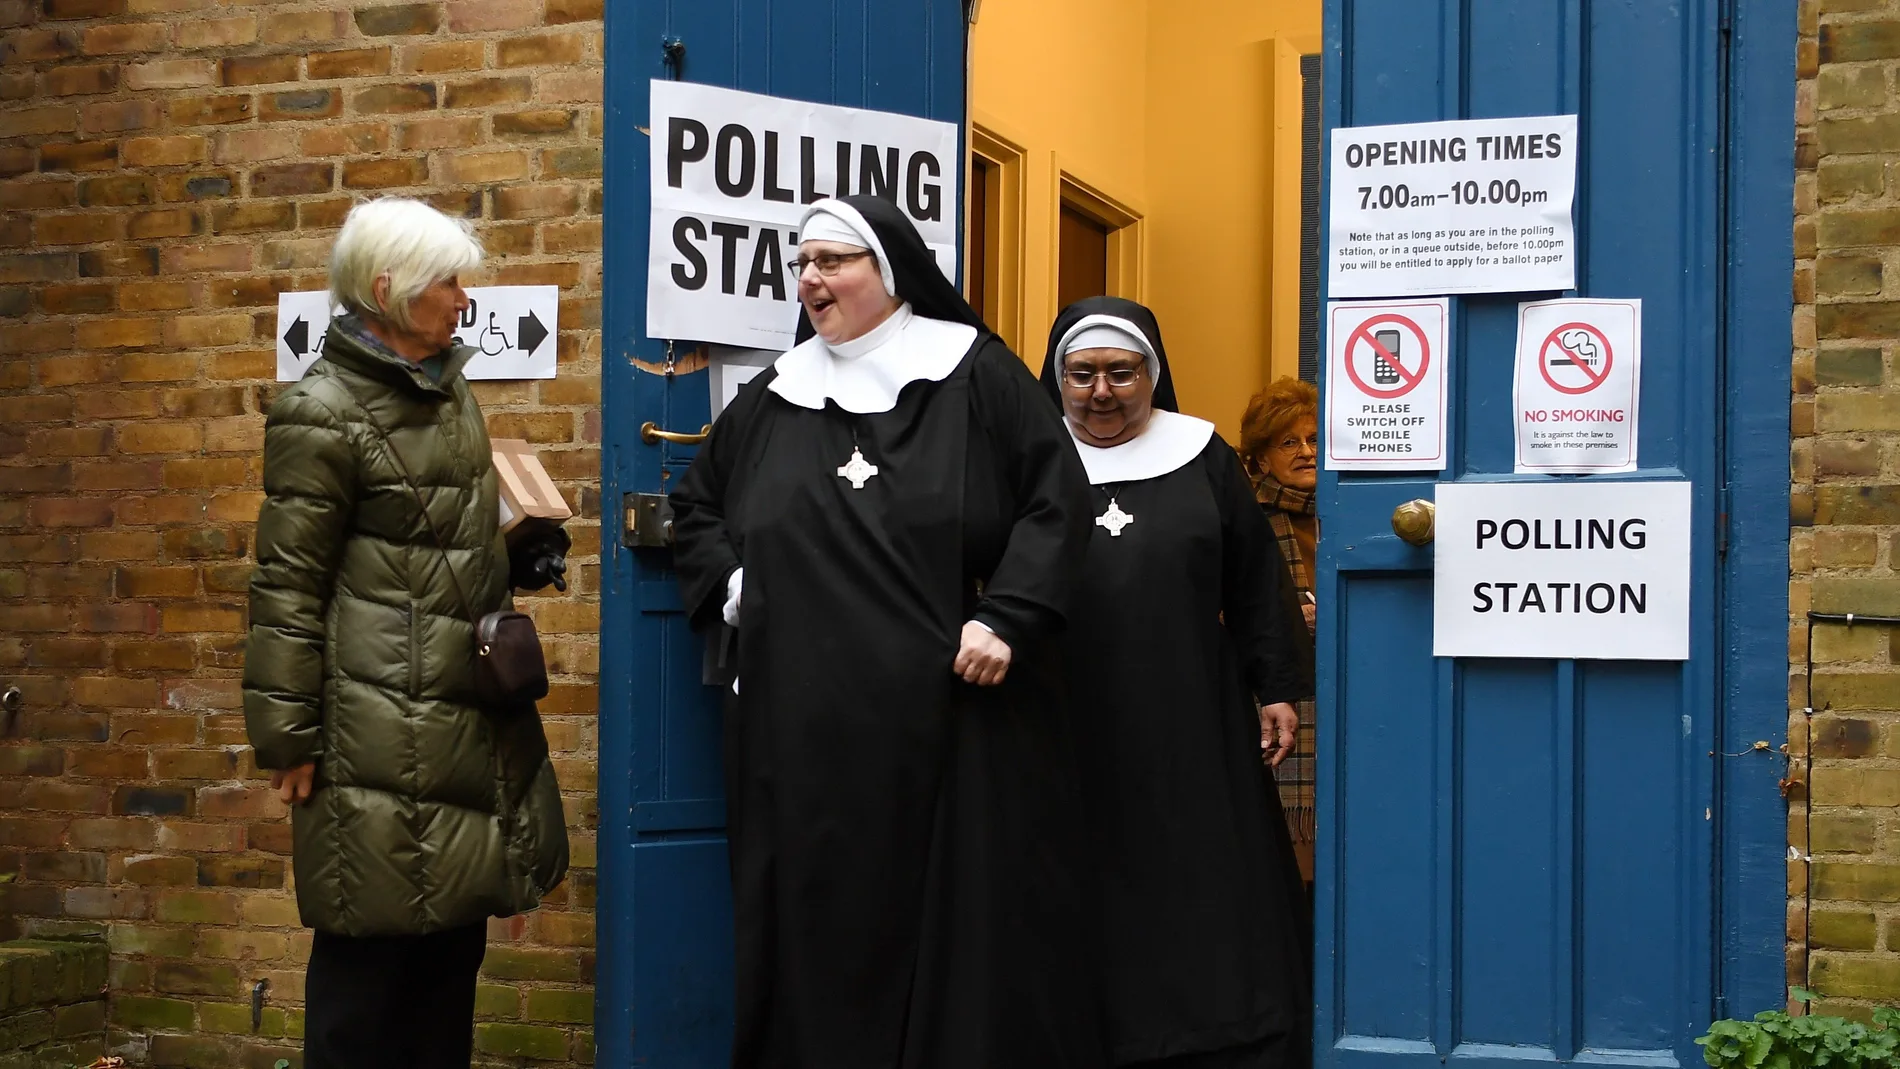 Las monjas del Convento Tyburn salen de la iglesia de St. Johns después de votar durante las elecciones generales en Londres, Gran Bretaña, el 12 de diciembre de 2019.